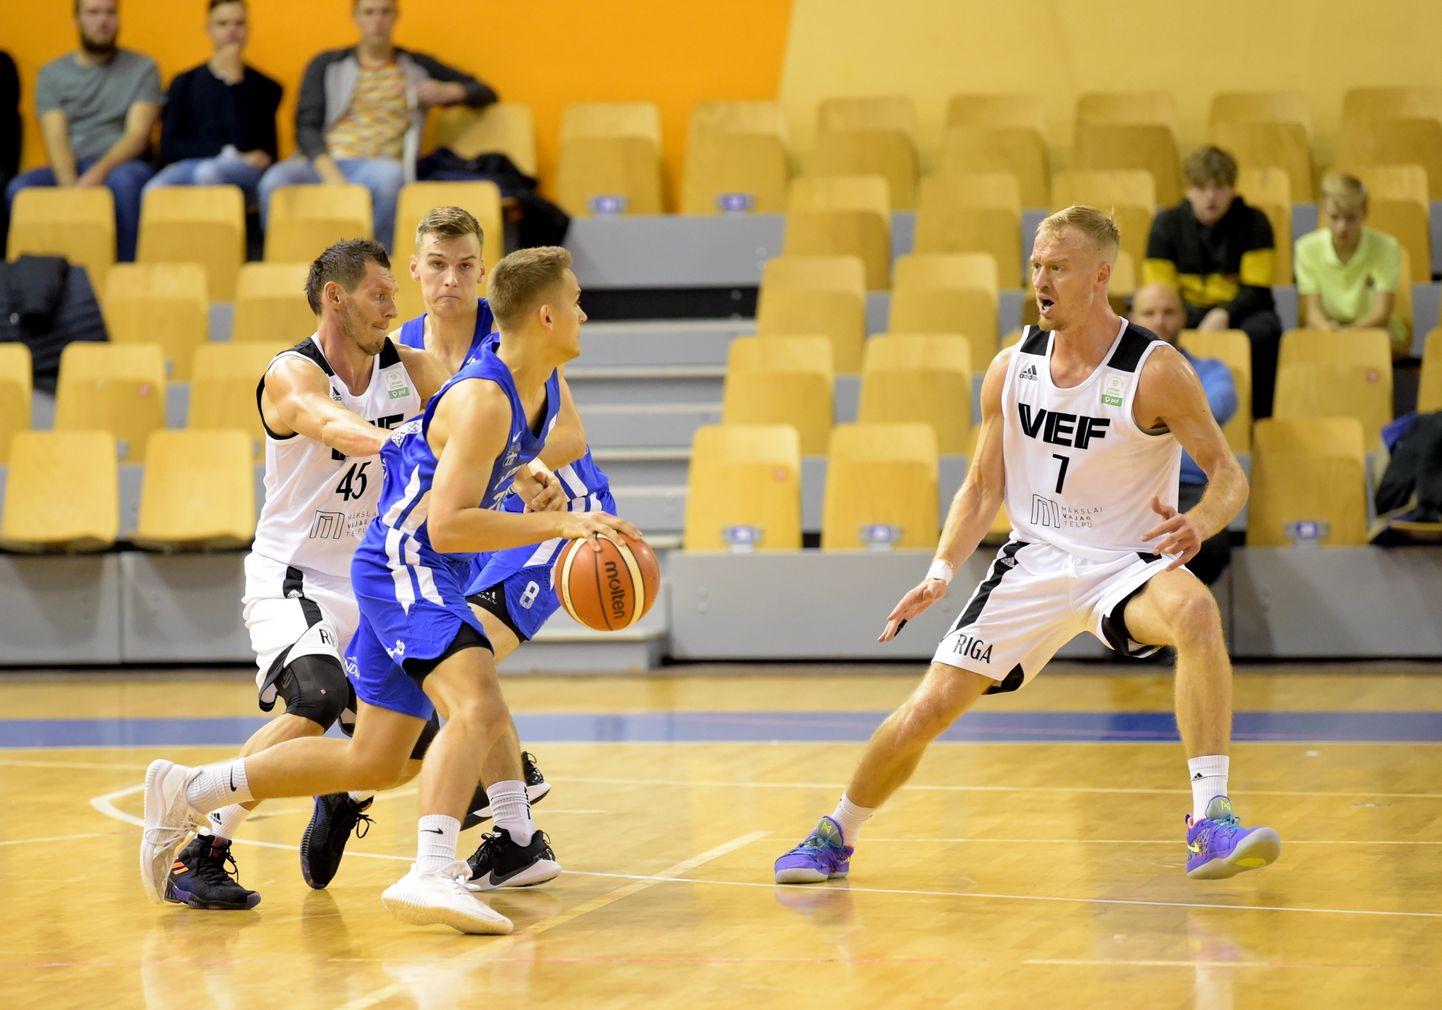 "PafBet" Latvijas-Igaunijas Basketbola līgas spēle starp "VEF Rīga" un "Latvijas Universitāte" komandām Olimpiskajā sporta centrā